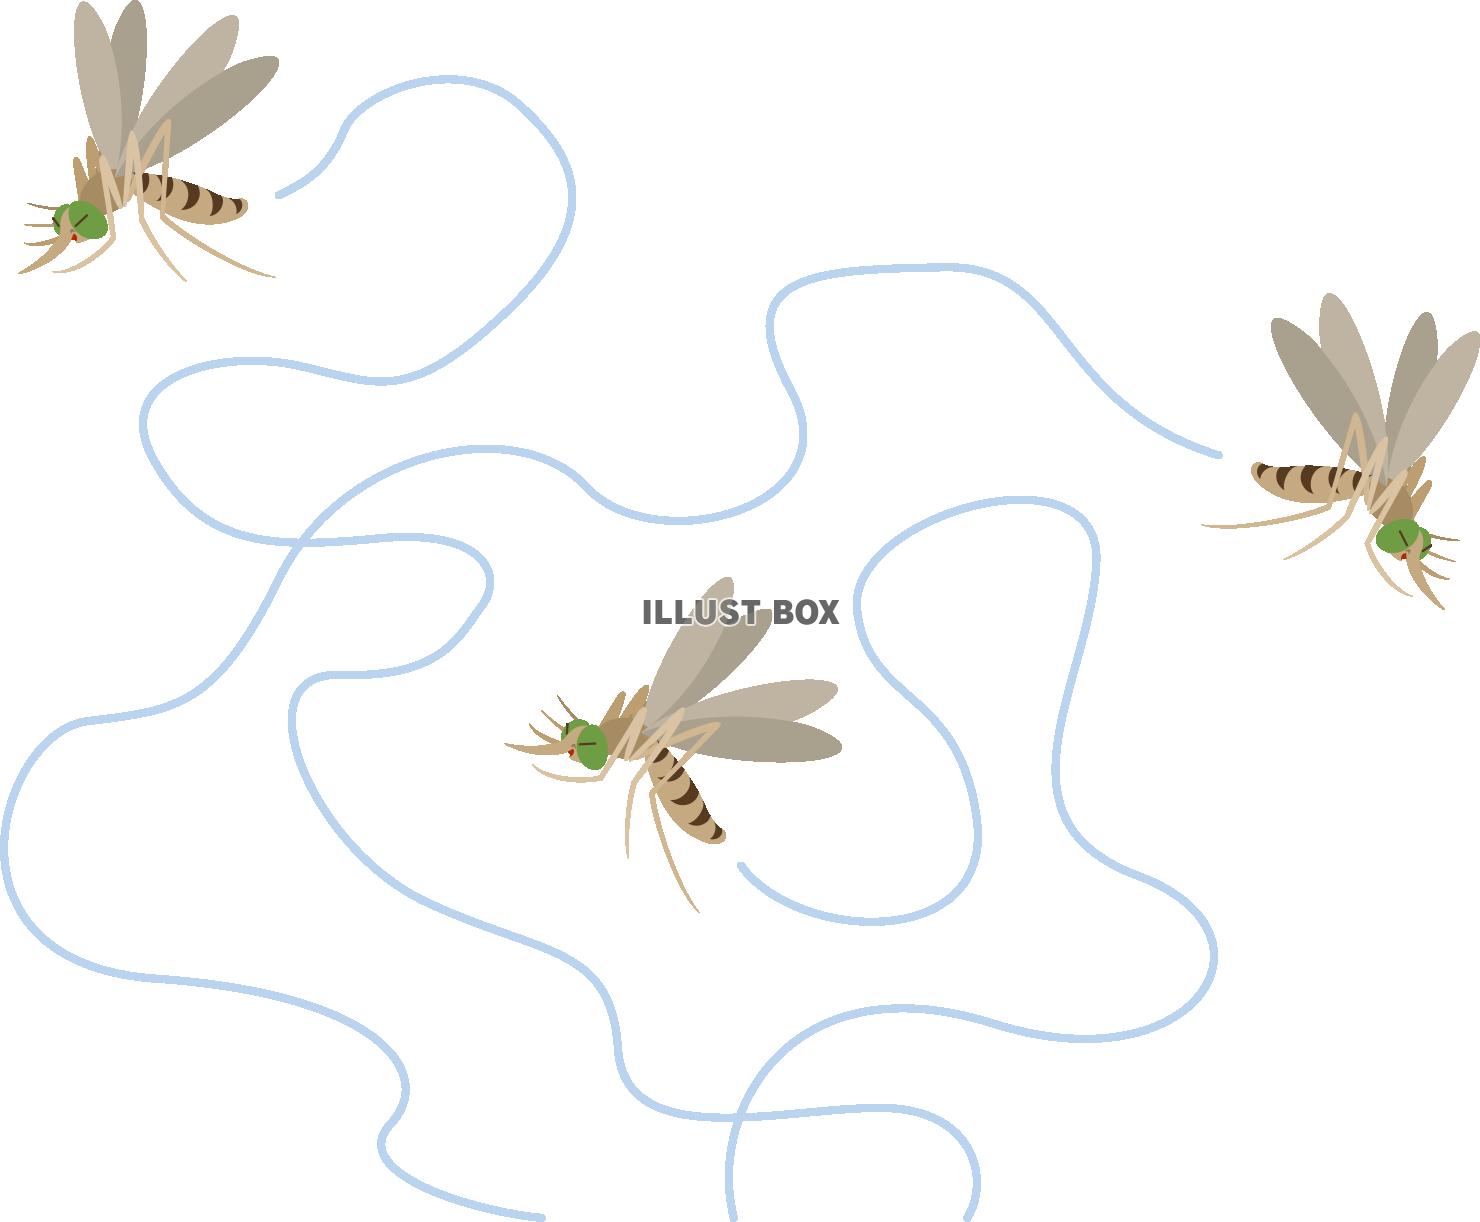 プンプン飛び回るシンプルな蚊